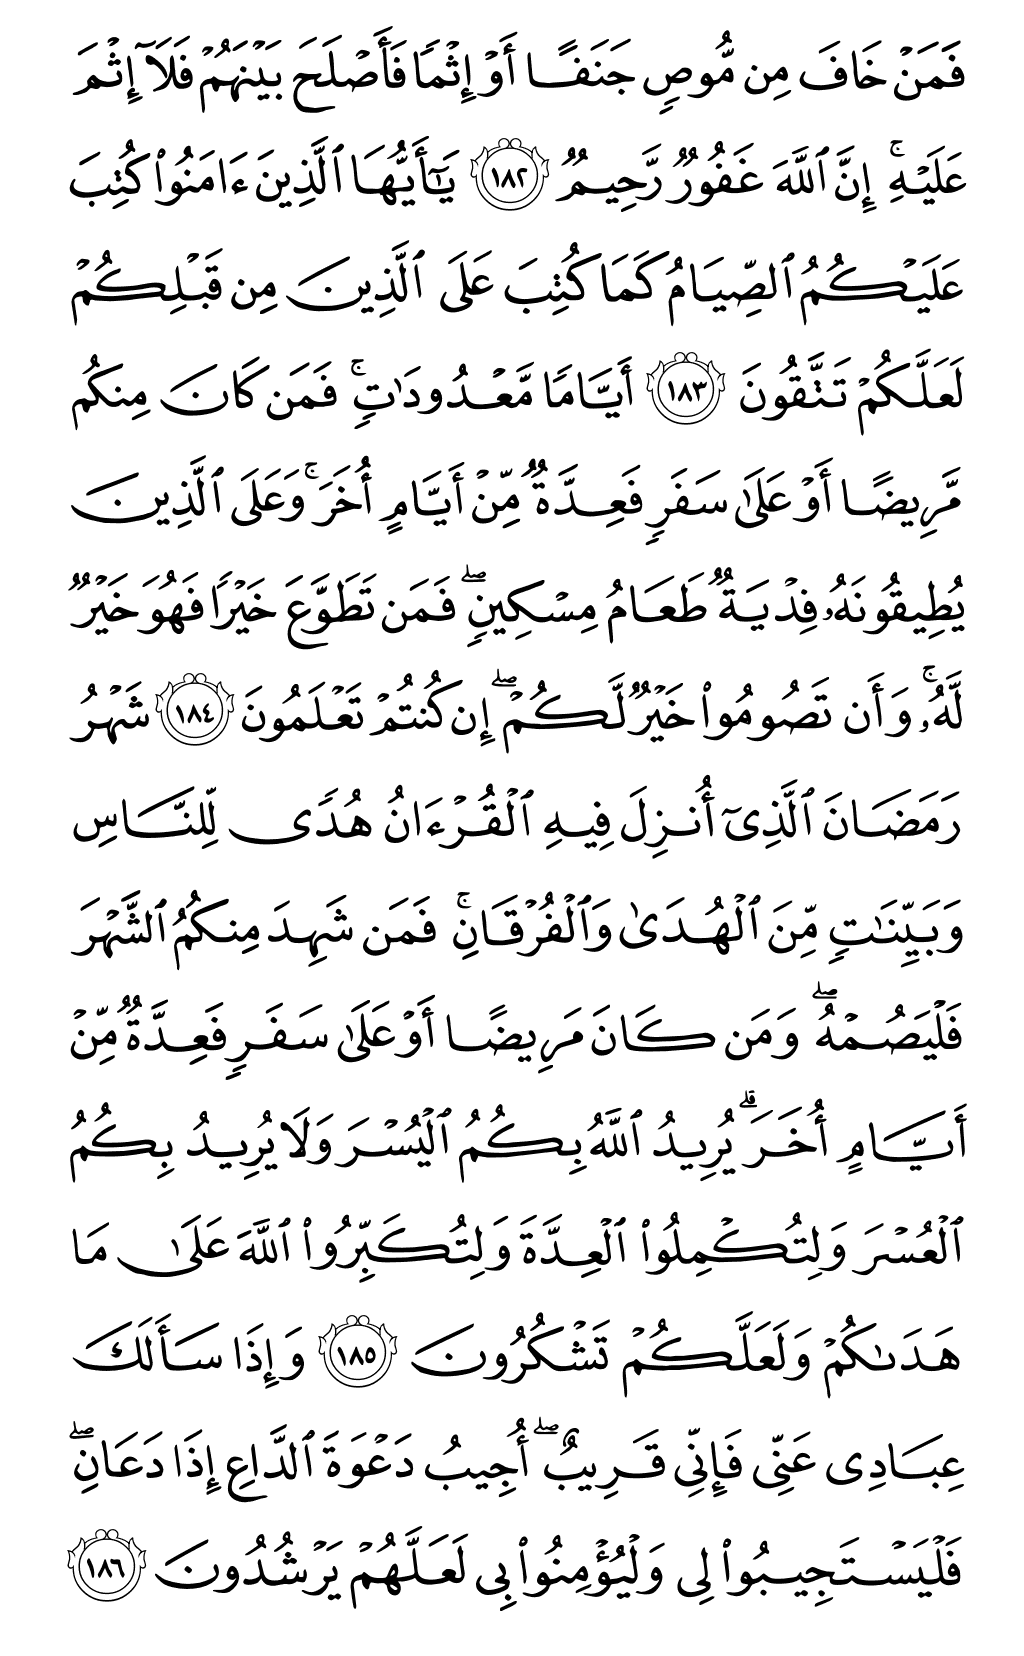 الصفحة رقم 28 من القرآن الكريم